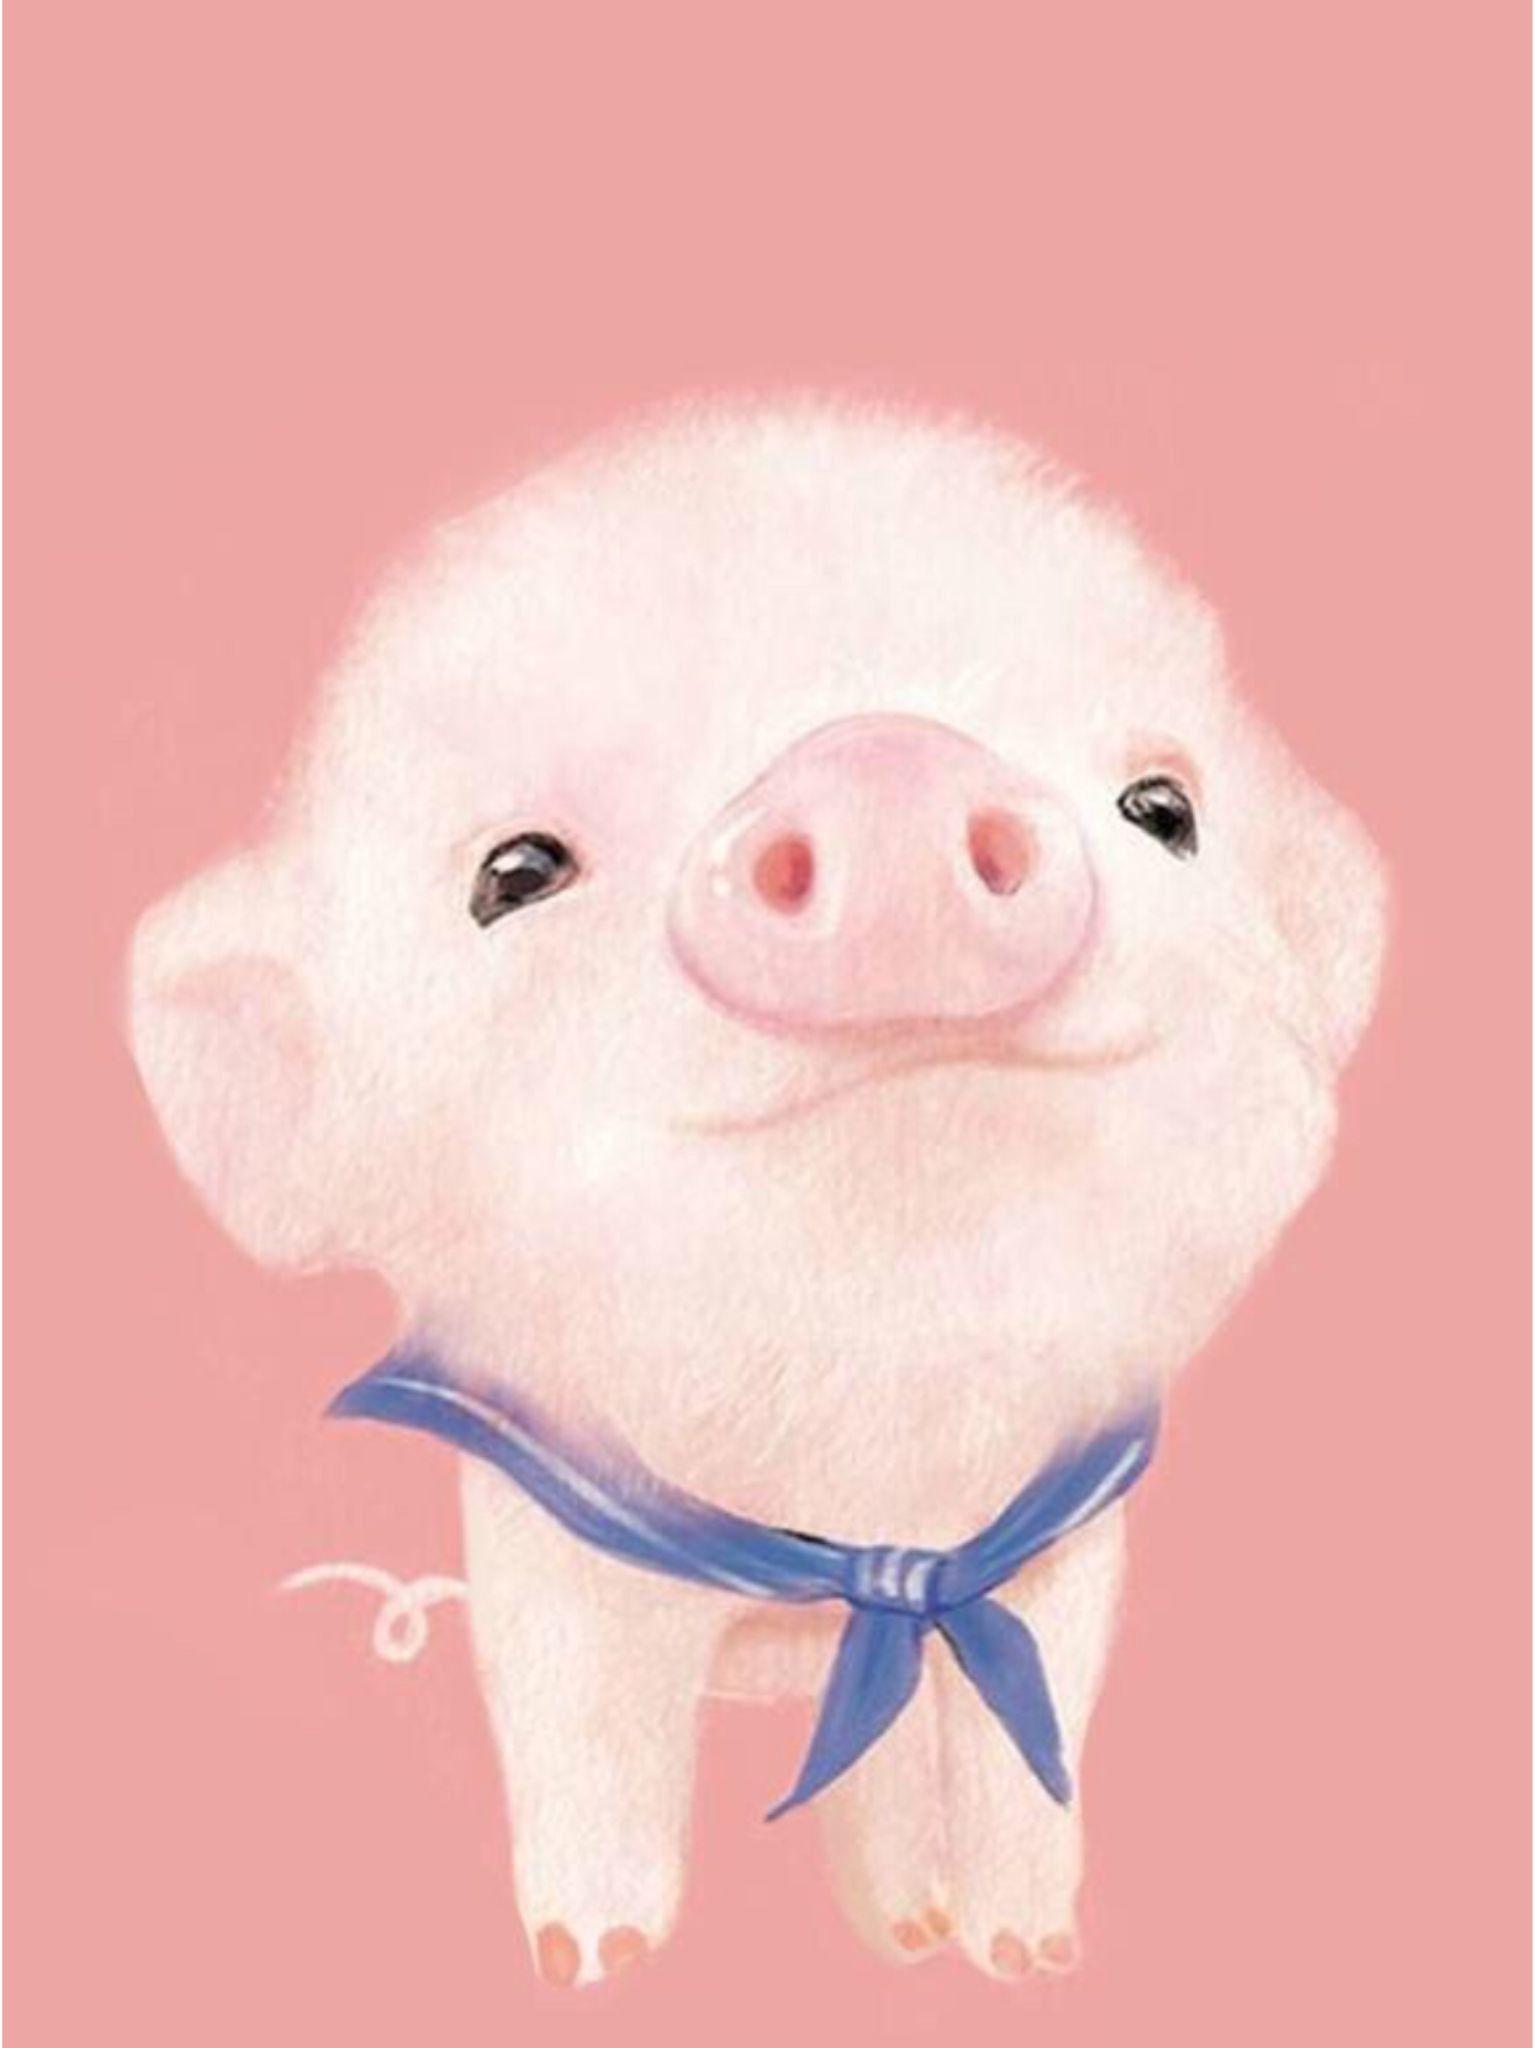 Cute Pig Wallpapers Top Những Hình Ảnh Đẹp